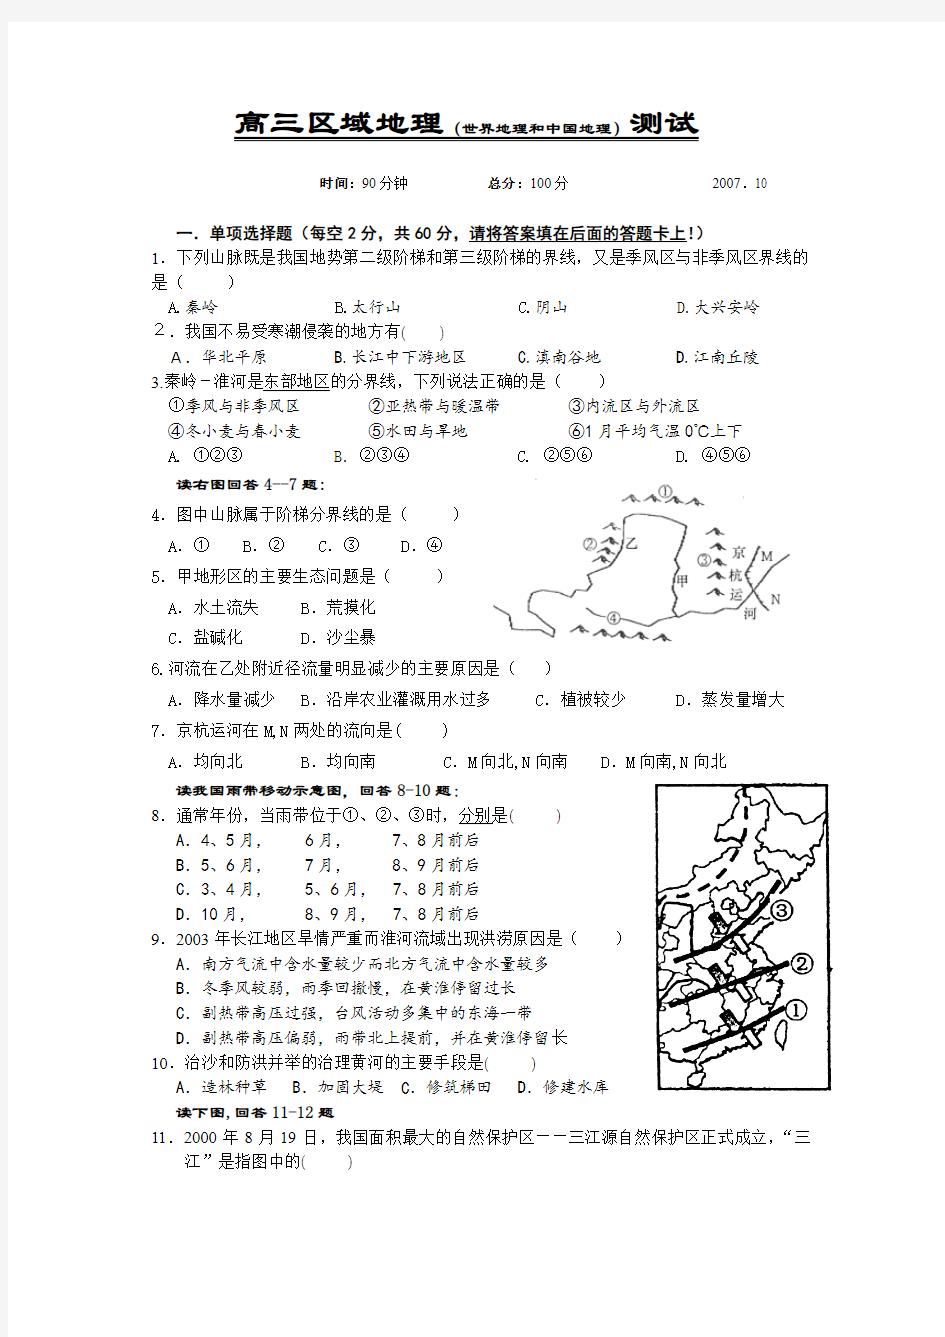 高三区域地理(中国地理和世界地理)测试